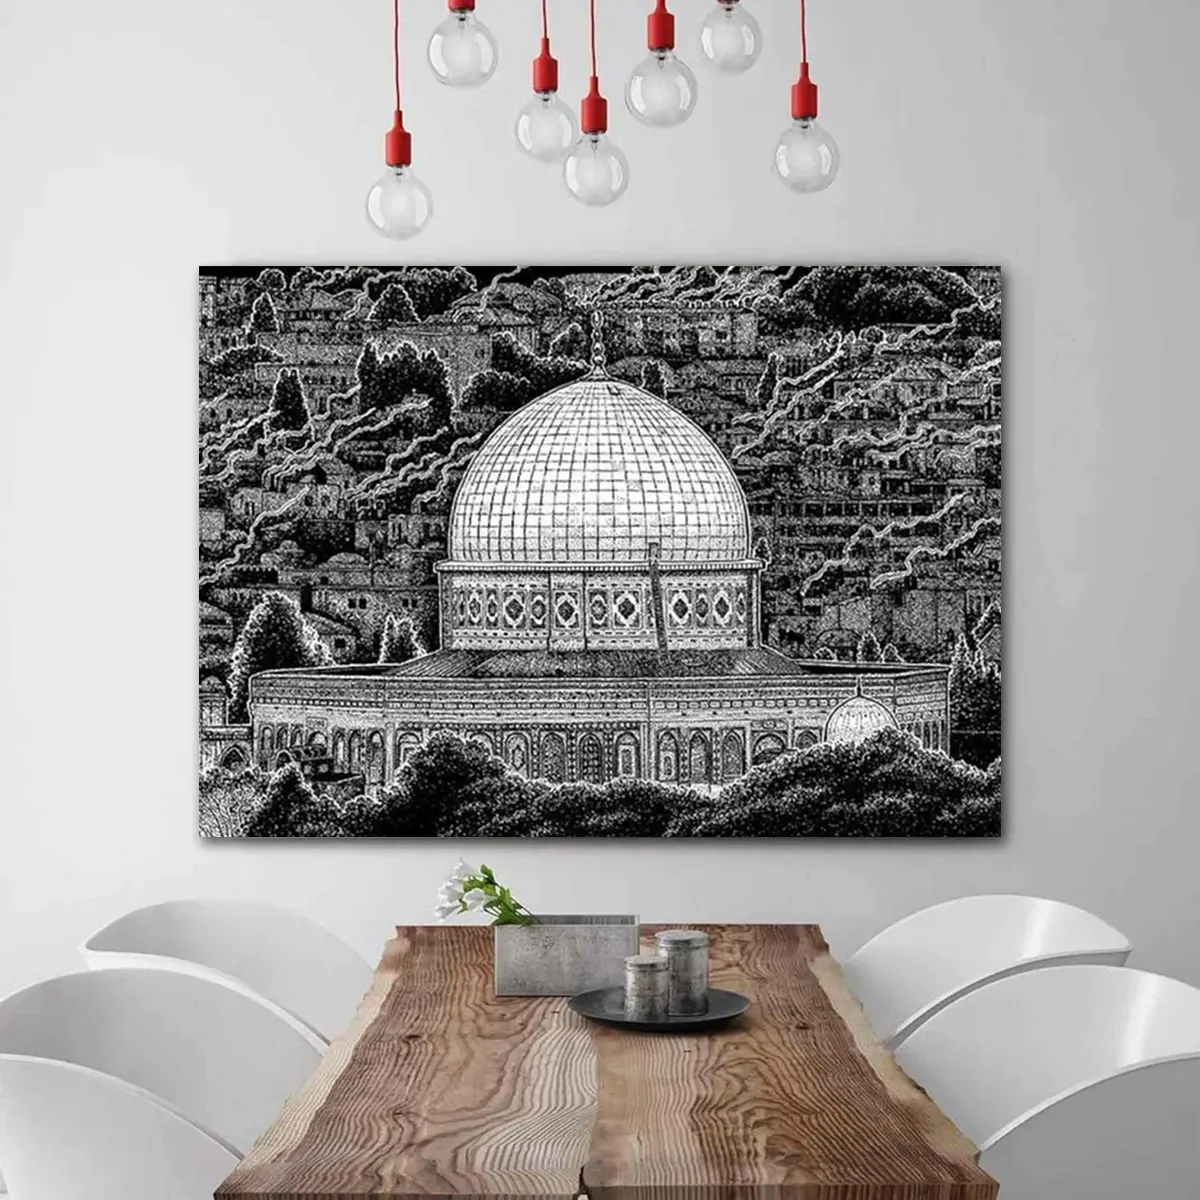 모스크 기도 벽 아잔 현대 이슬람 예술 플렉시 유리 디자인 그림 크리스탈 도자기 인쇄 서예 이슬람 장식